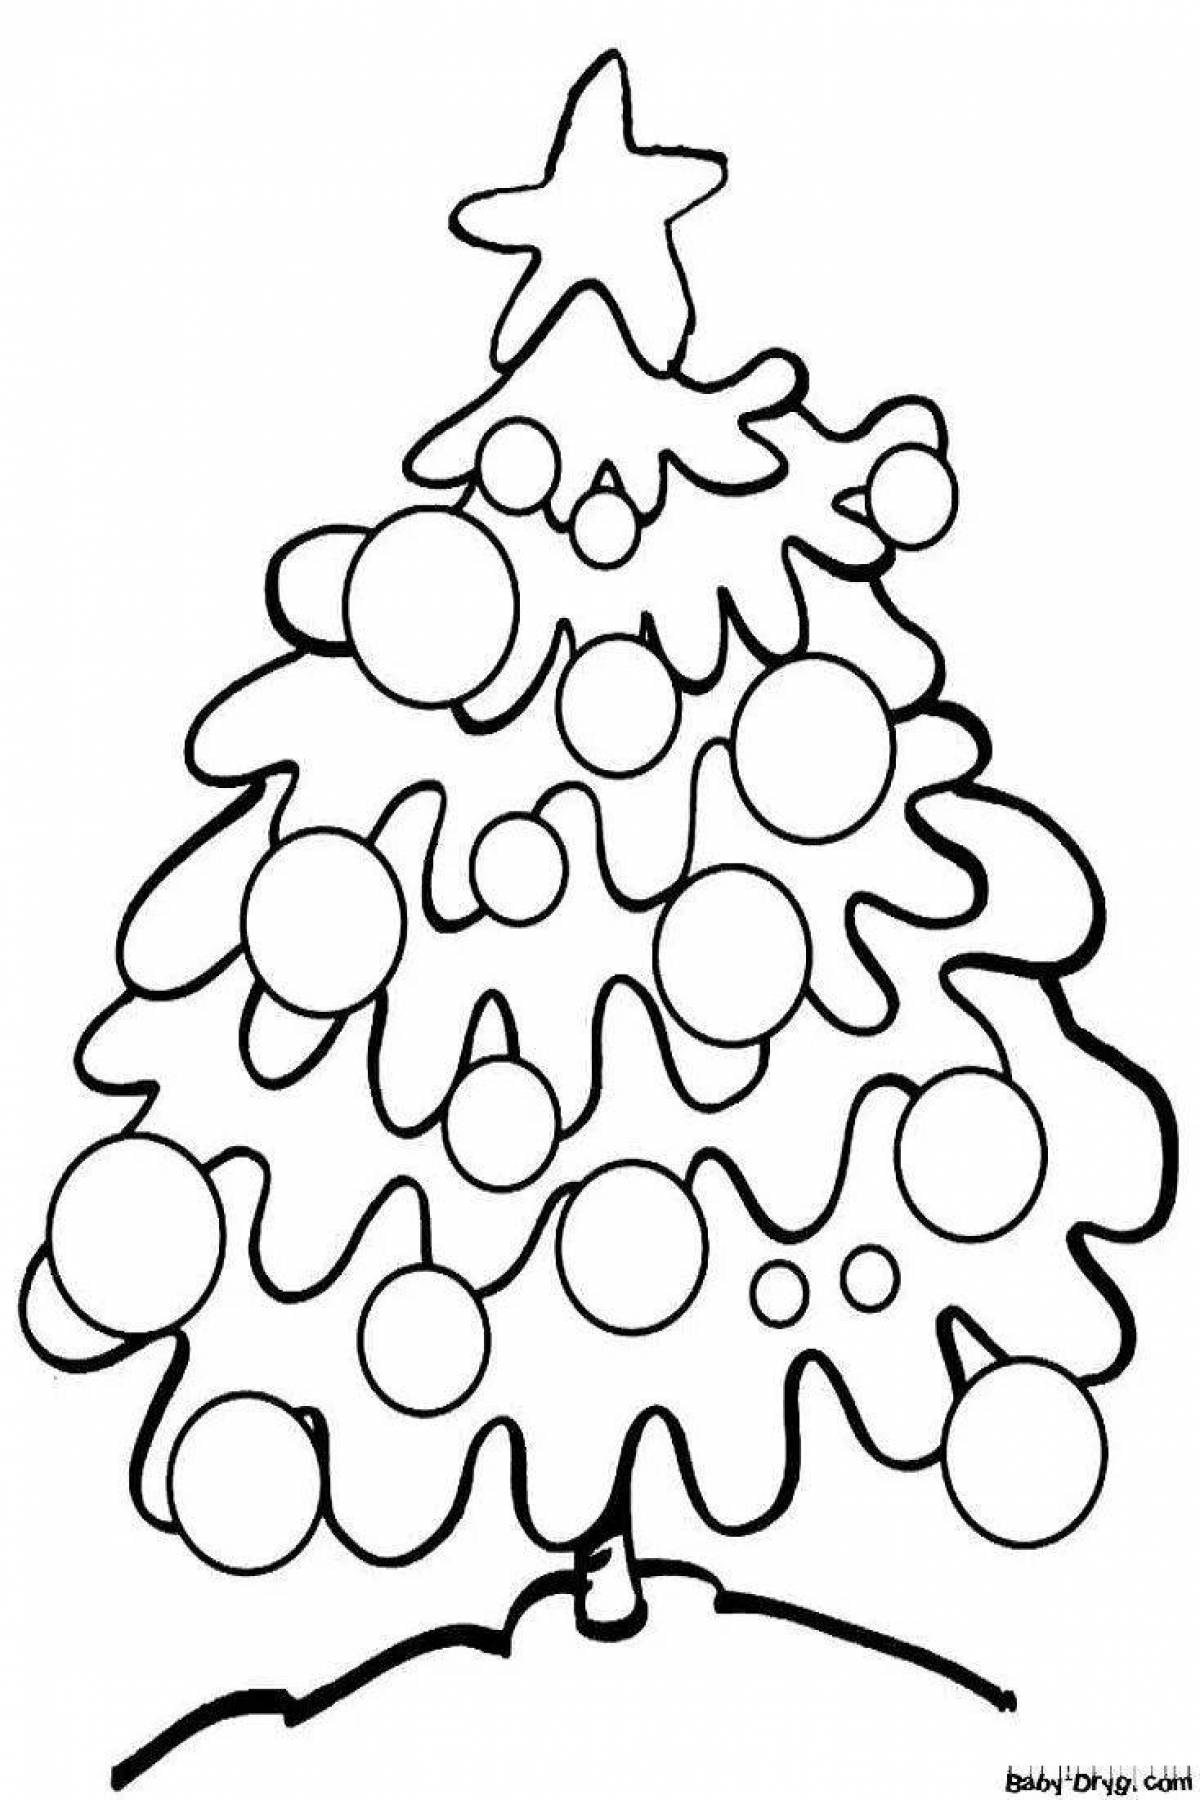 Royal Christmas tree with balls